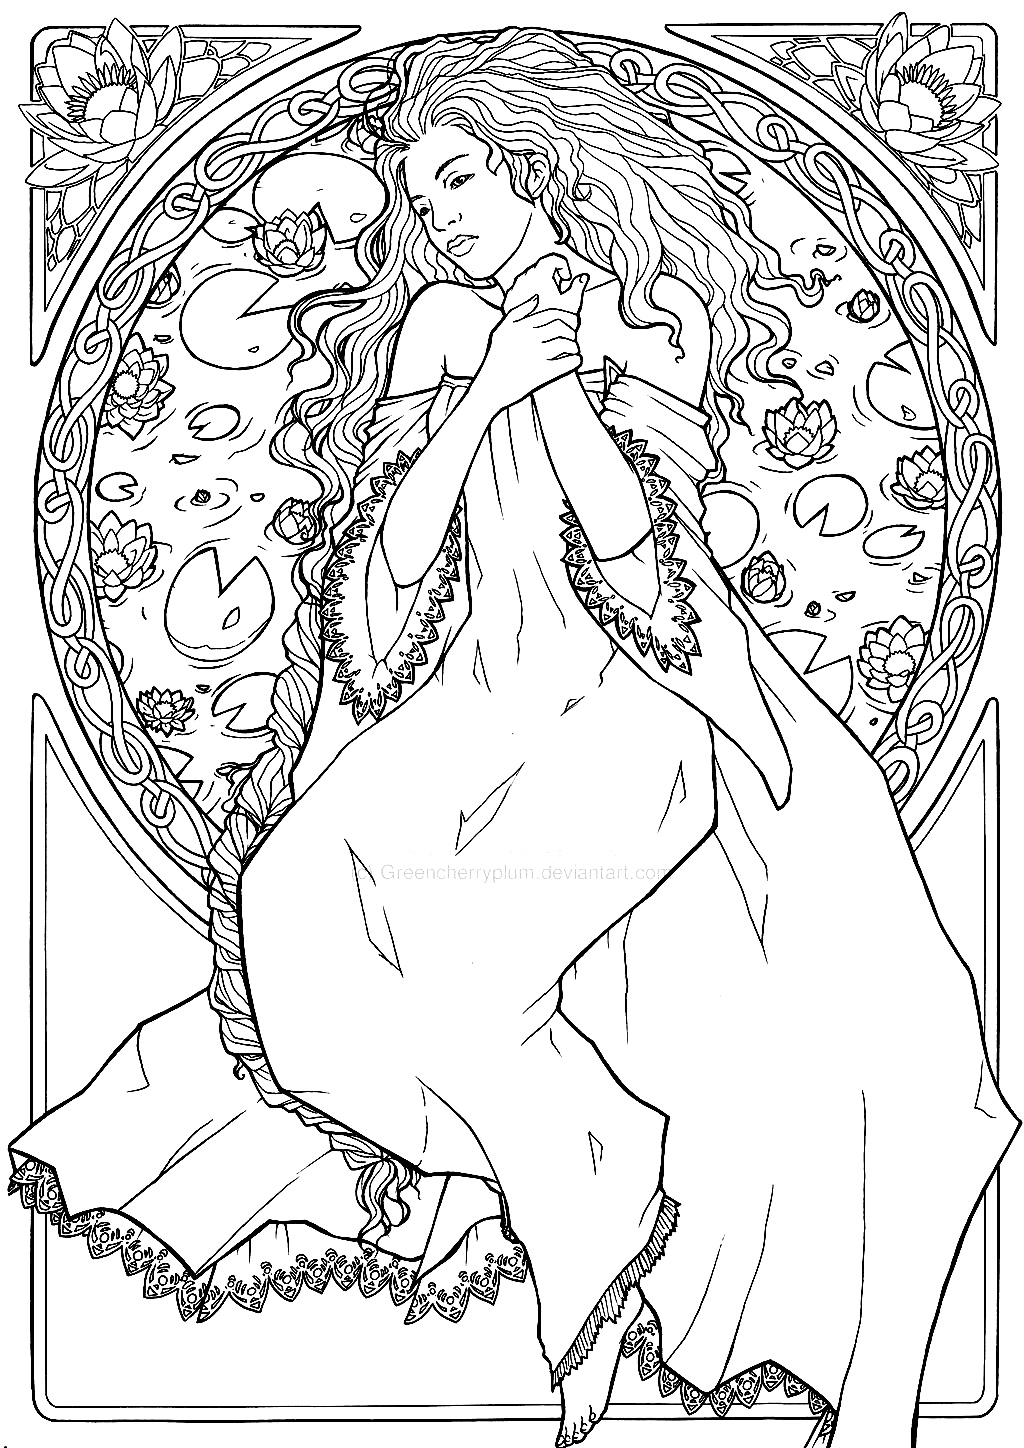 Dibujo de una mujer, en estilo Art Nouveau - Art nouveau - Colorear para  Adultos